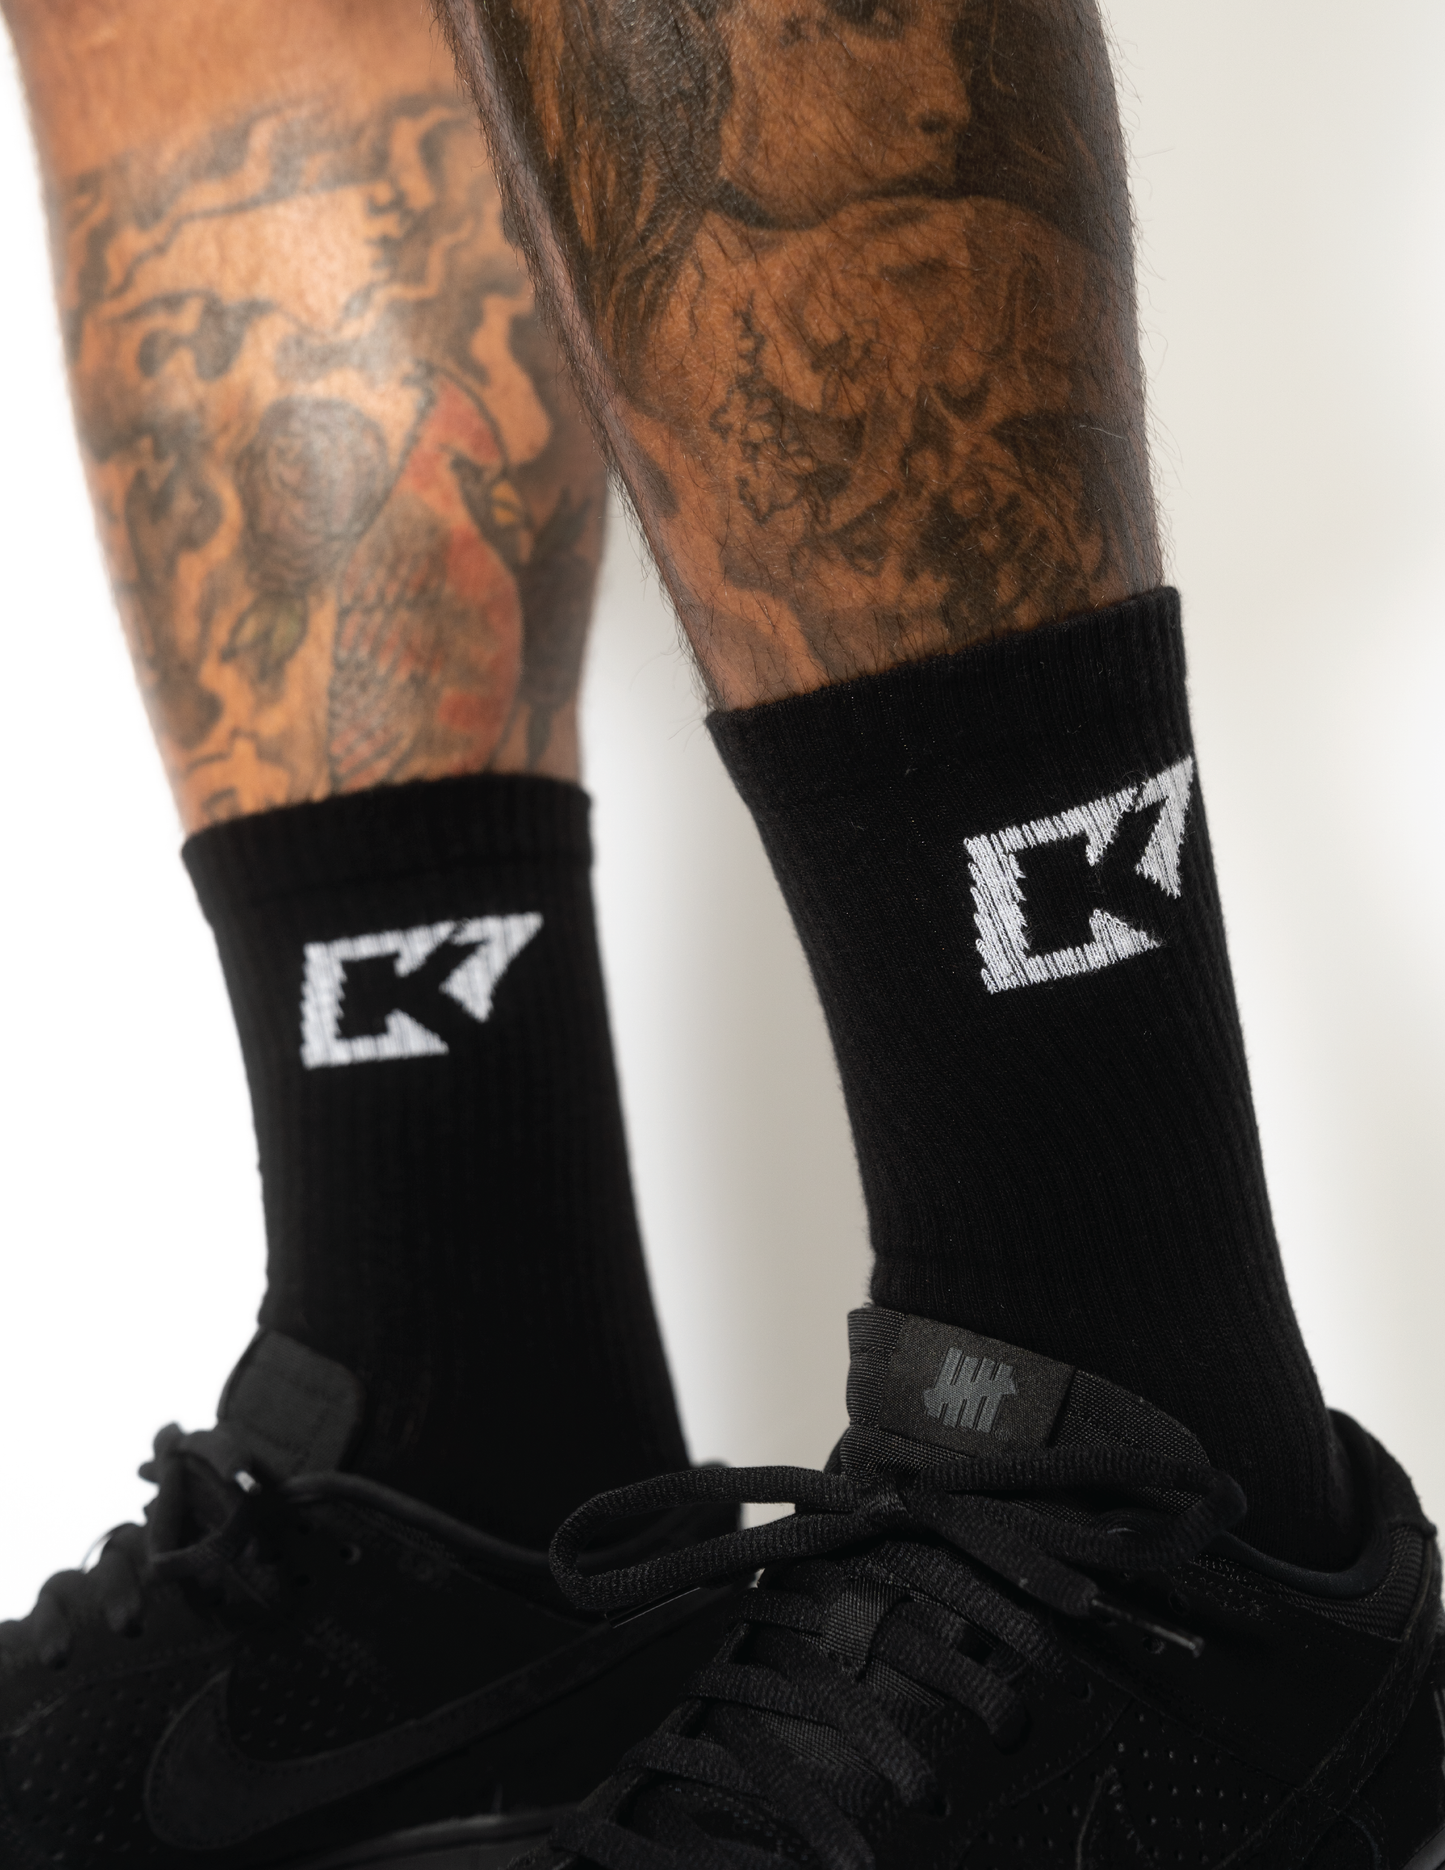 CK7 Black Socks